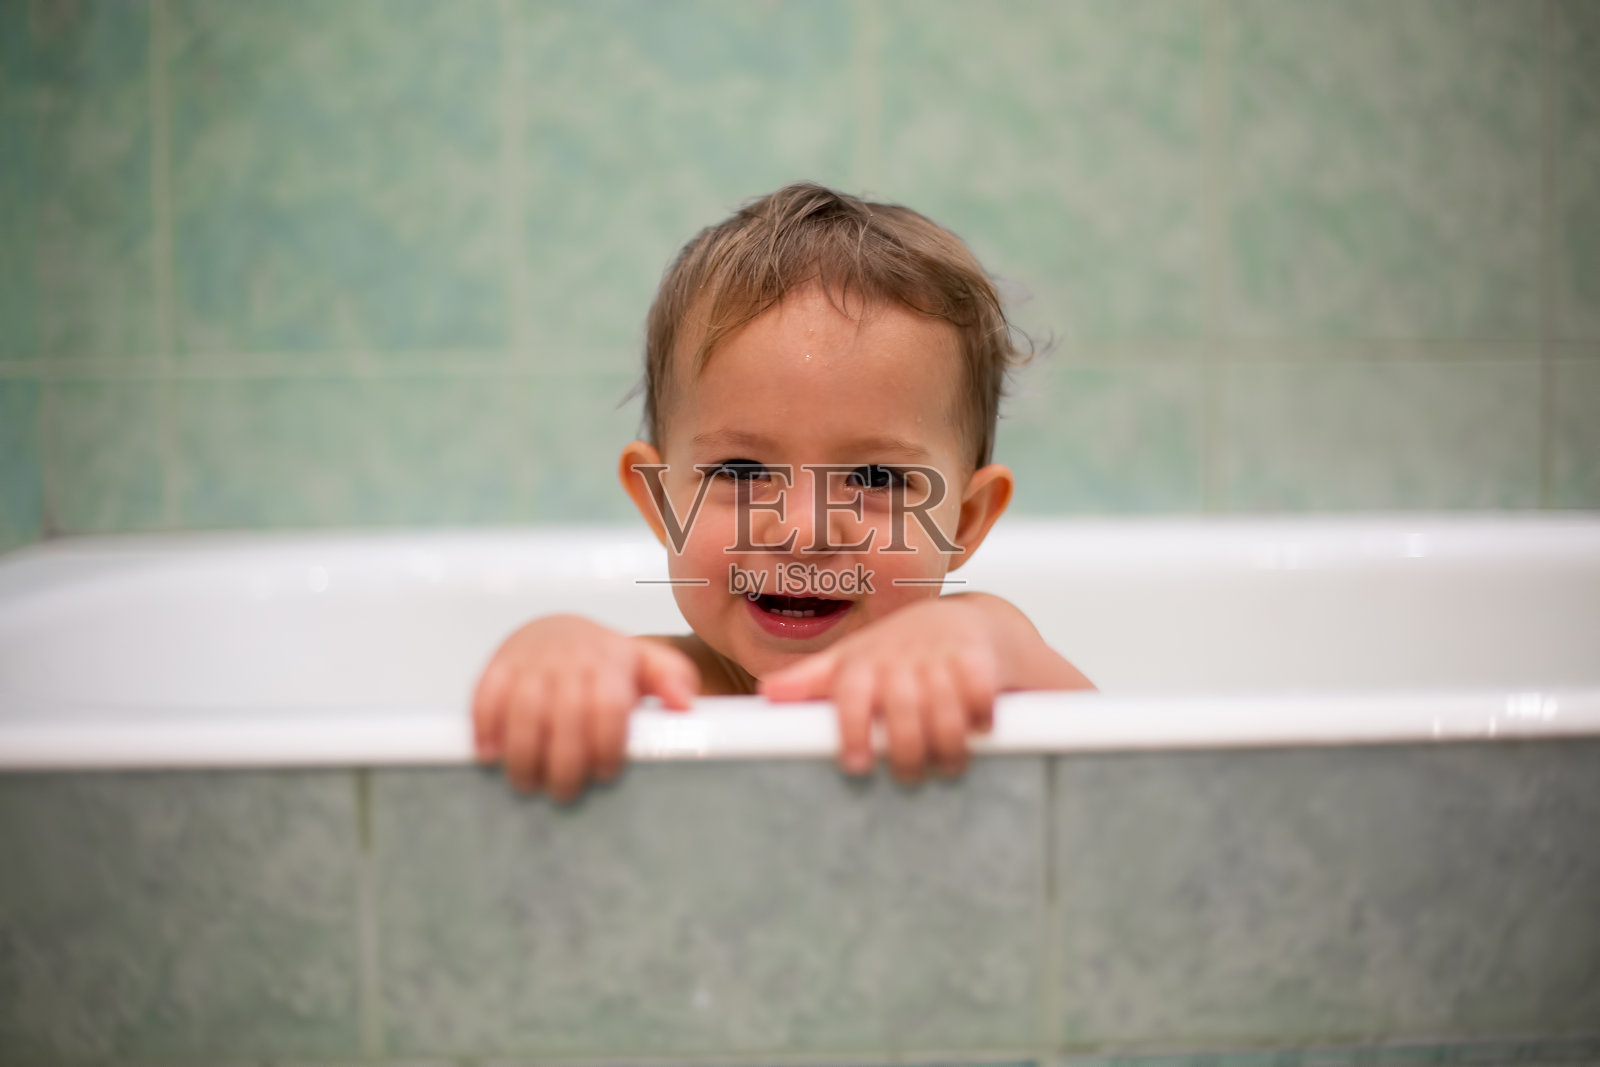 一个可爱的白人婴儿从浴缸里探出头来，把手放在浴缸边，看着镜头，张大嘴巴笑了。背景是一个模糊的绿色浴室。特写,软焦点照片摄影图片